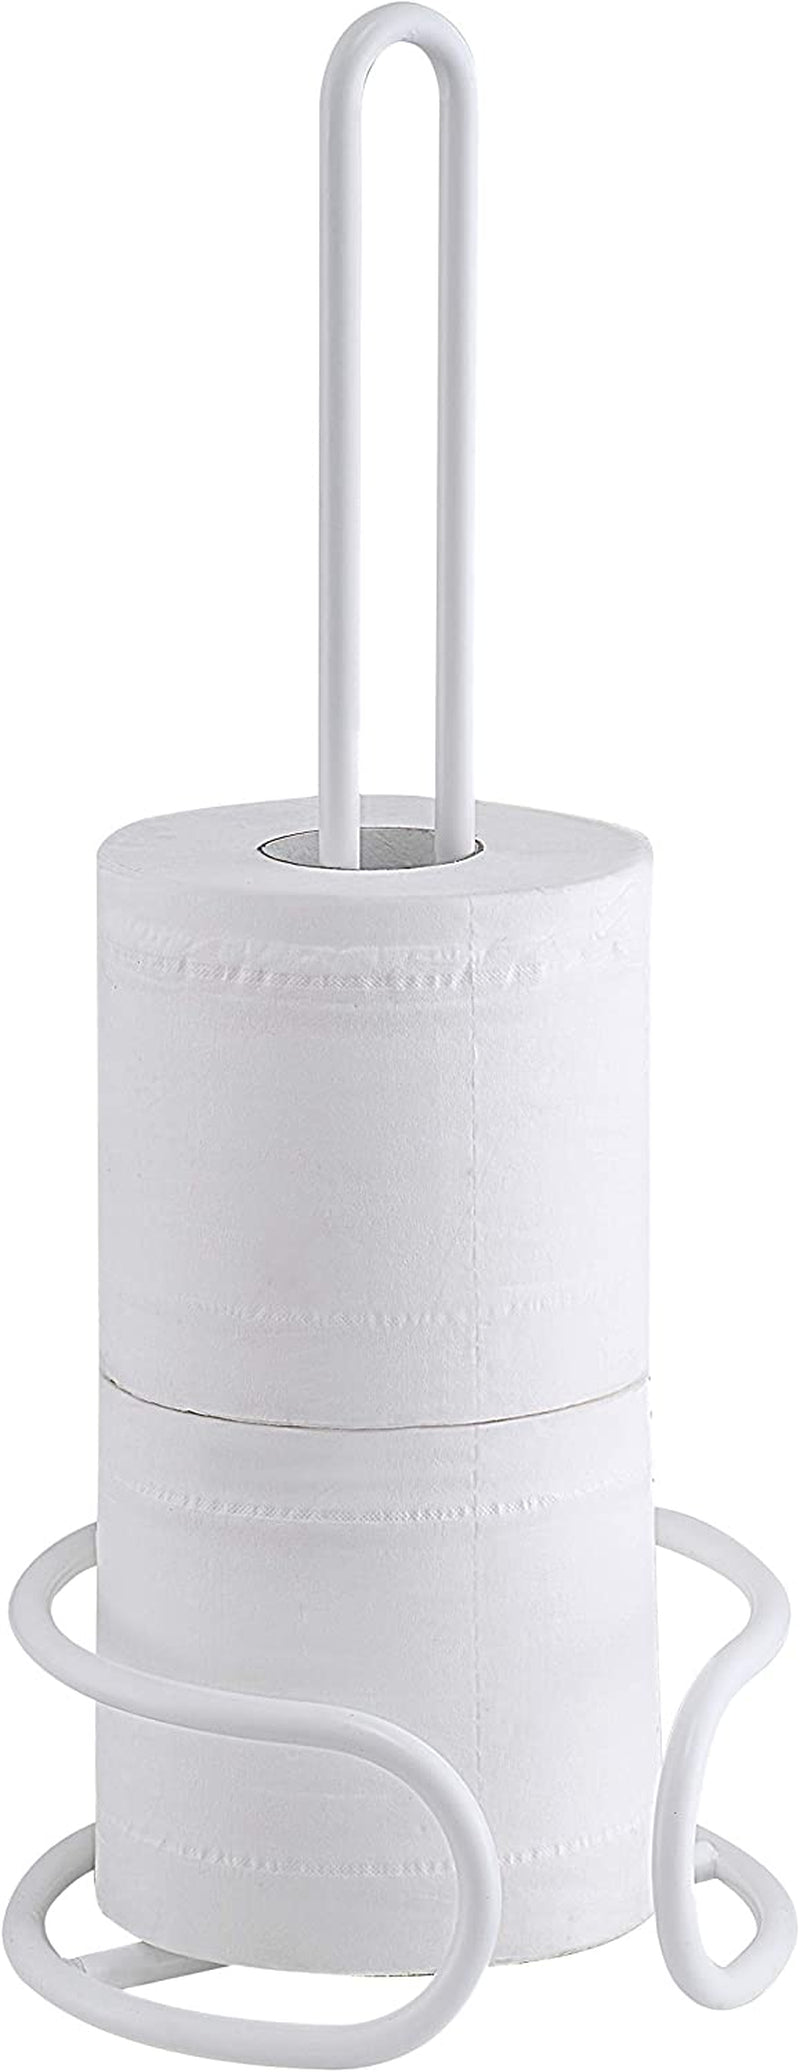 Sunnypoint Heavy Wire Gauge Spare Bathroom Toilet Tissue Paper Roll Holder Storage Stand Home & Garden > Household Supplies > Storage & Organization SunnyPoint White  